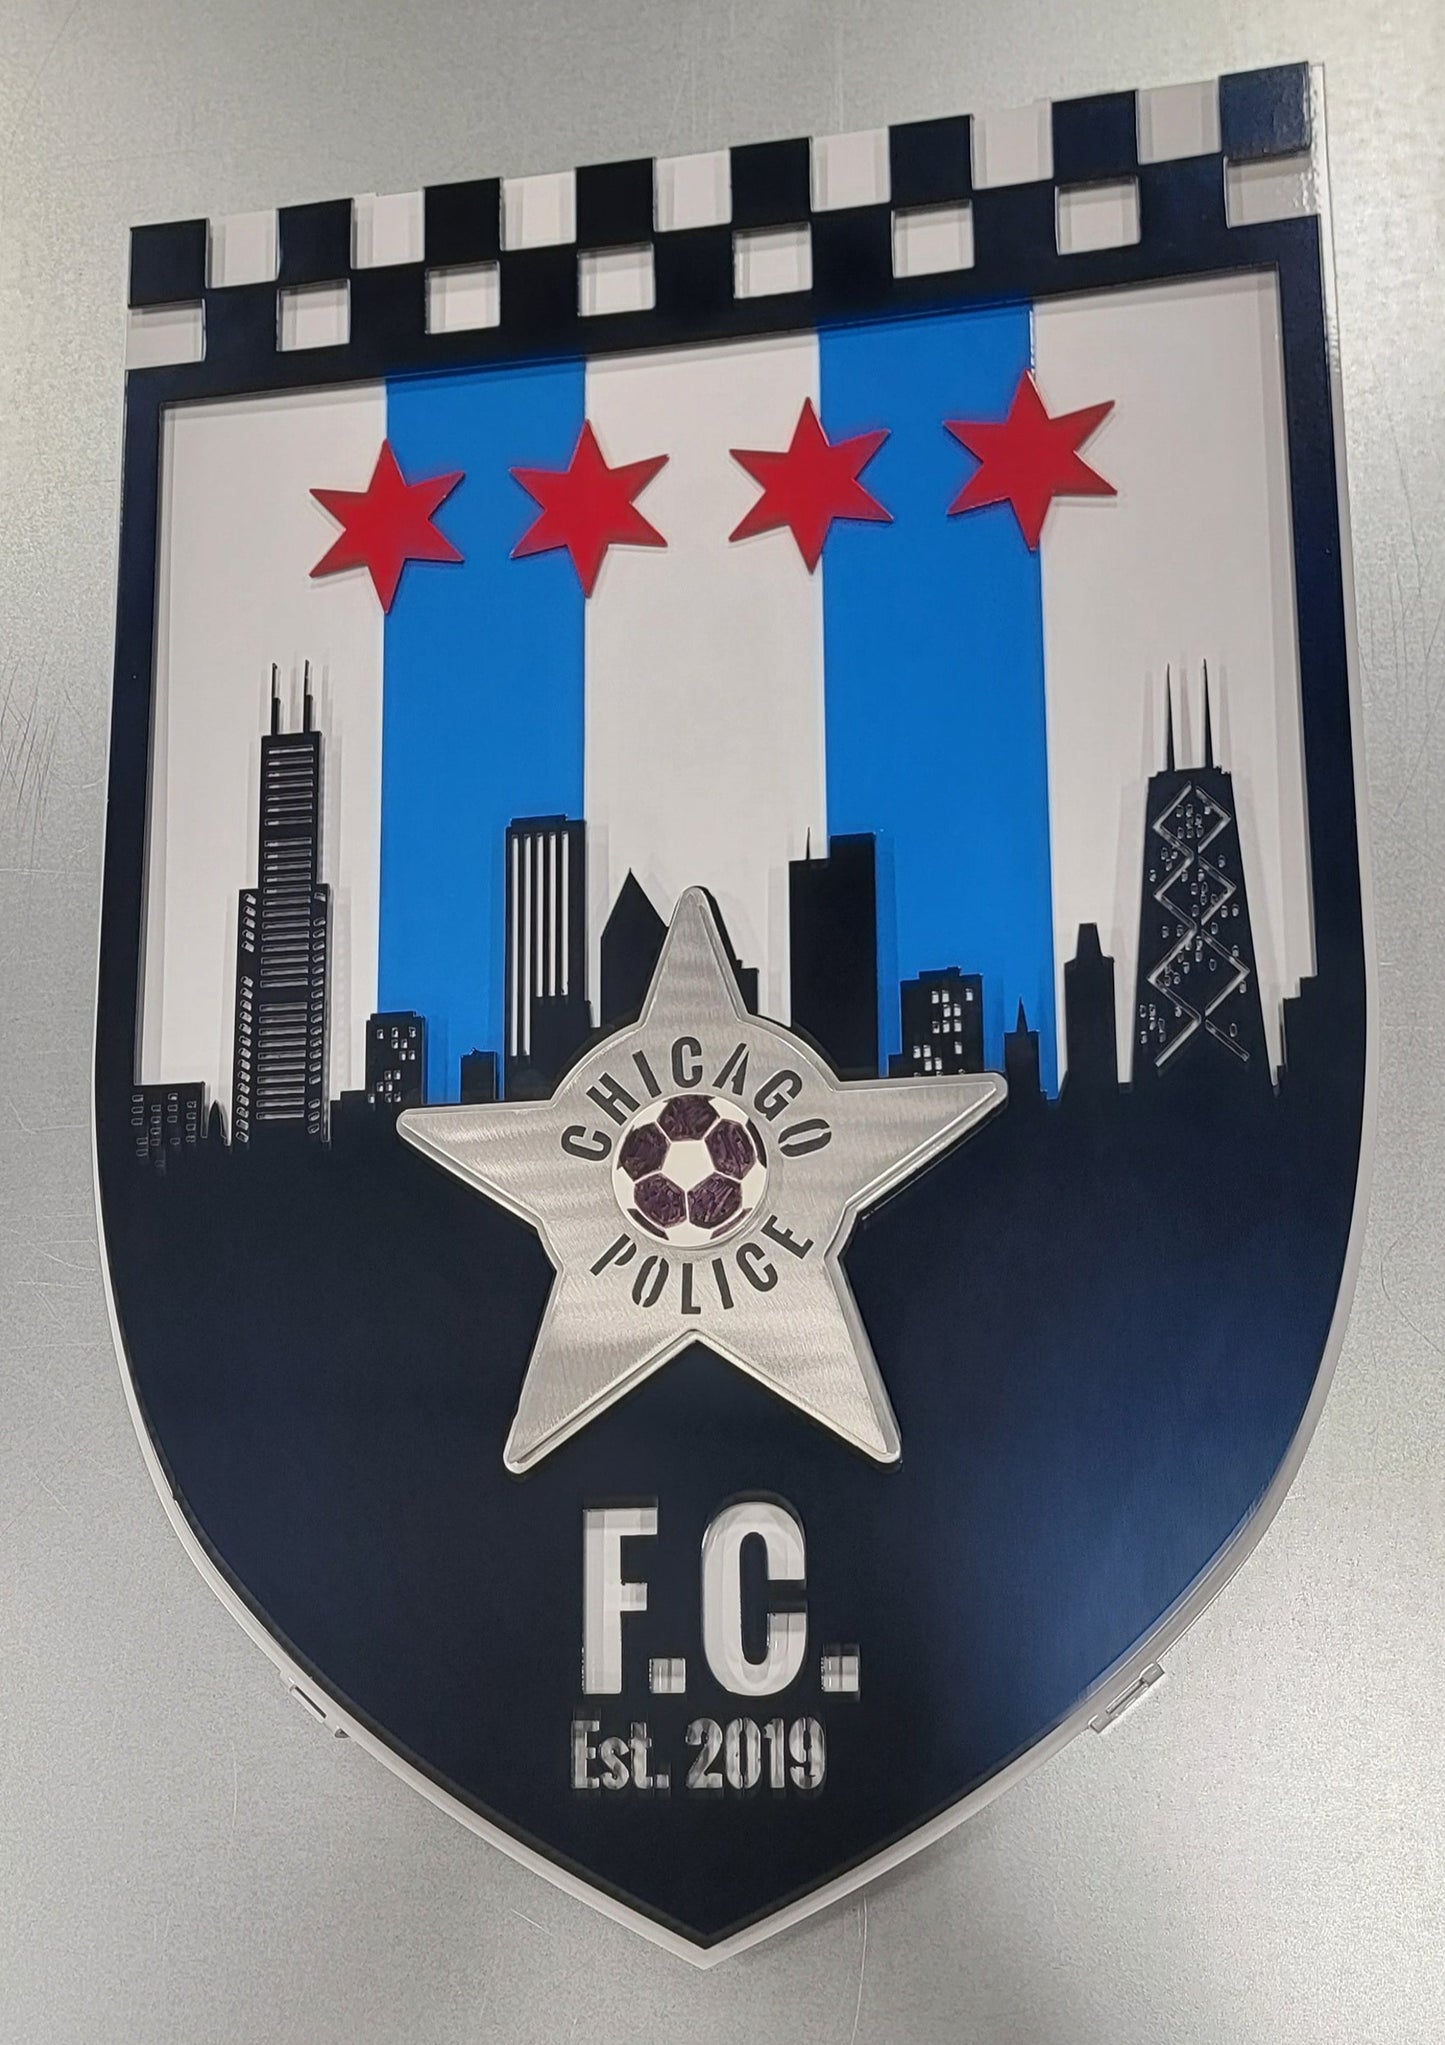 Chicago Police Futbol Club